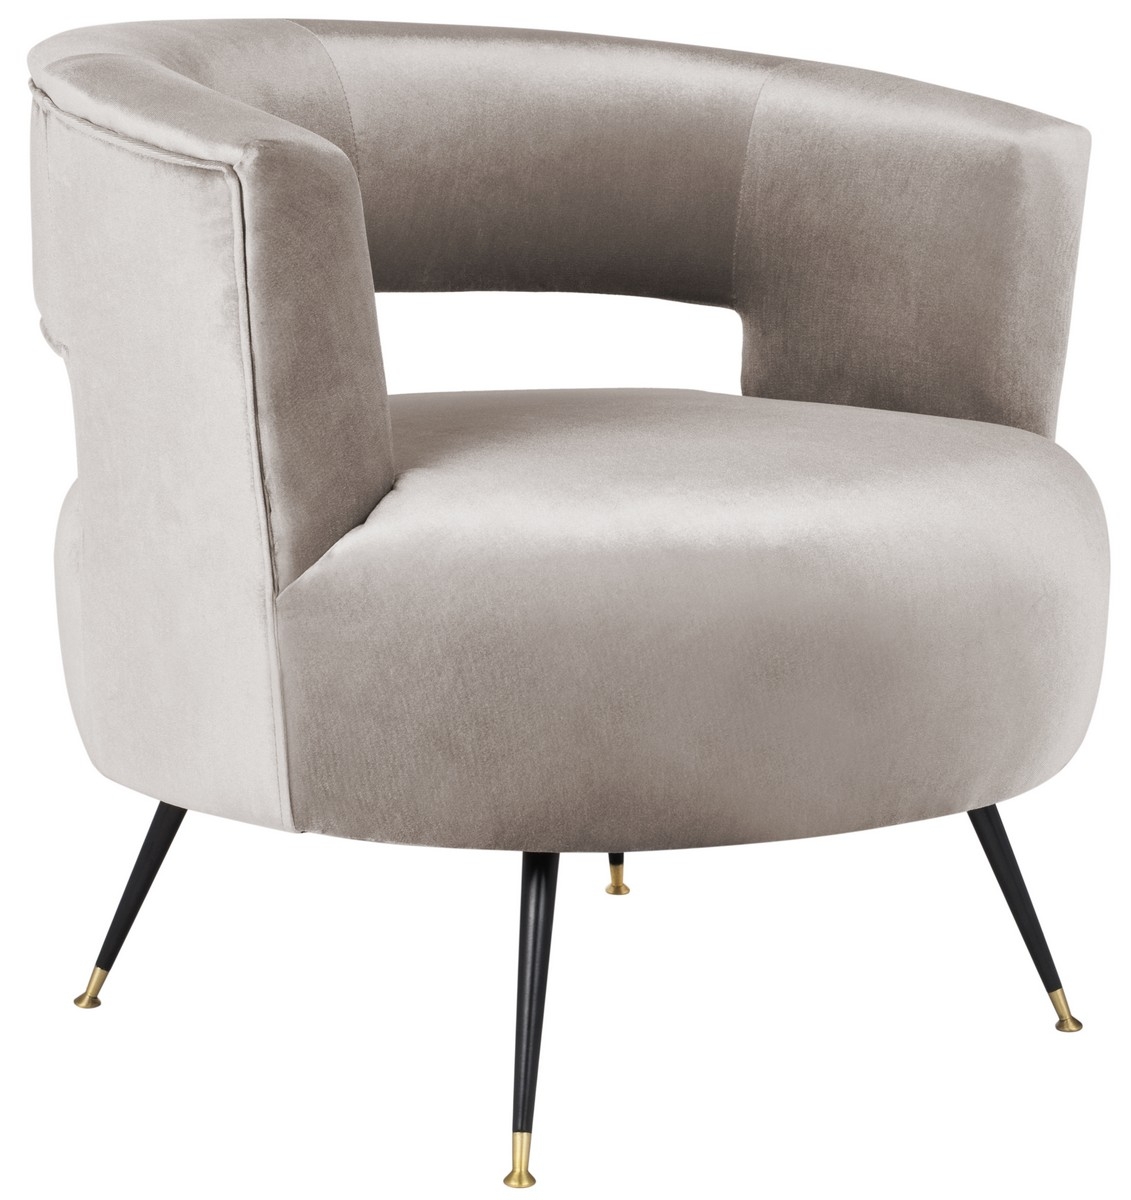 Manet Velvet Retro Mid Century Accent Chair - Hazelwood - Arlo Home - Image 2